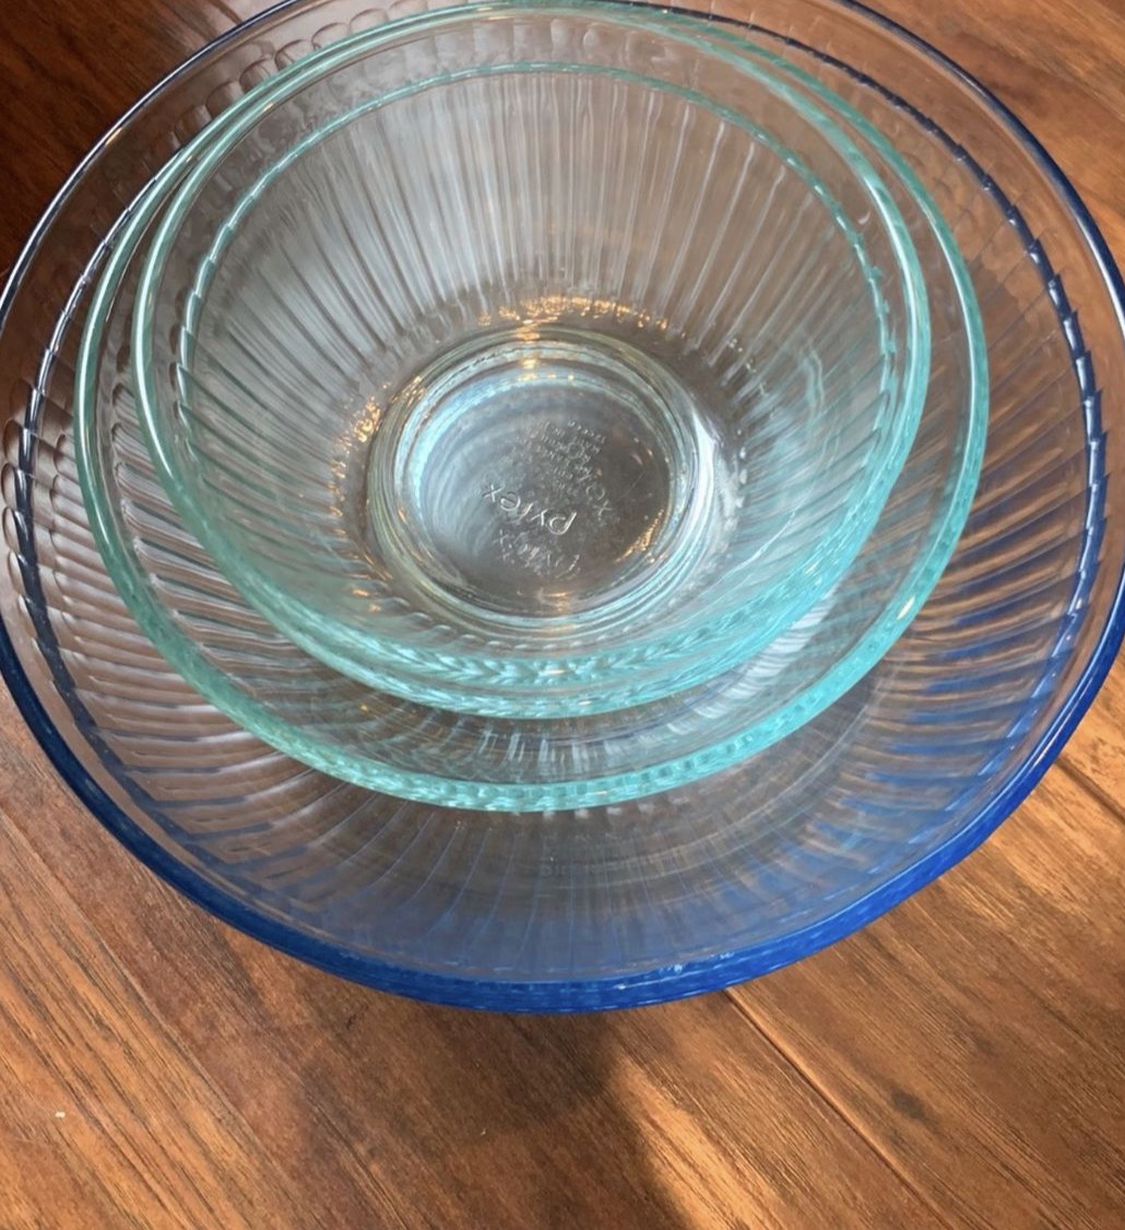 Pyrex glass bowls 5 total